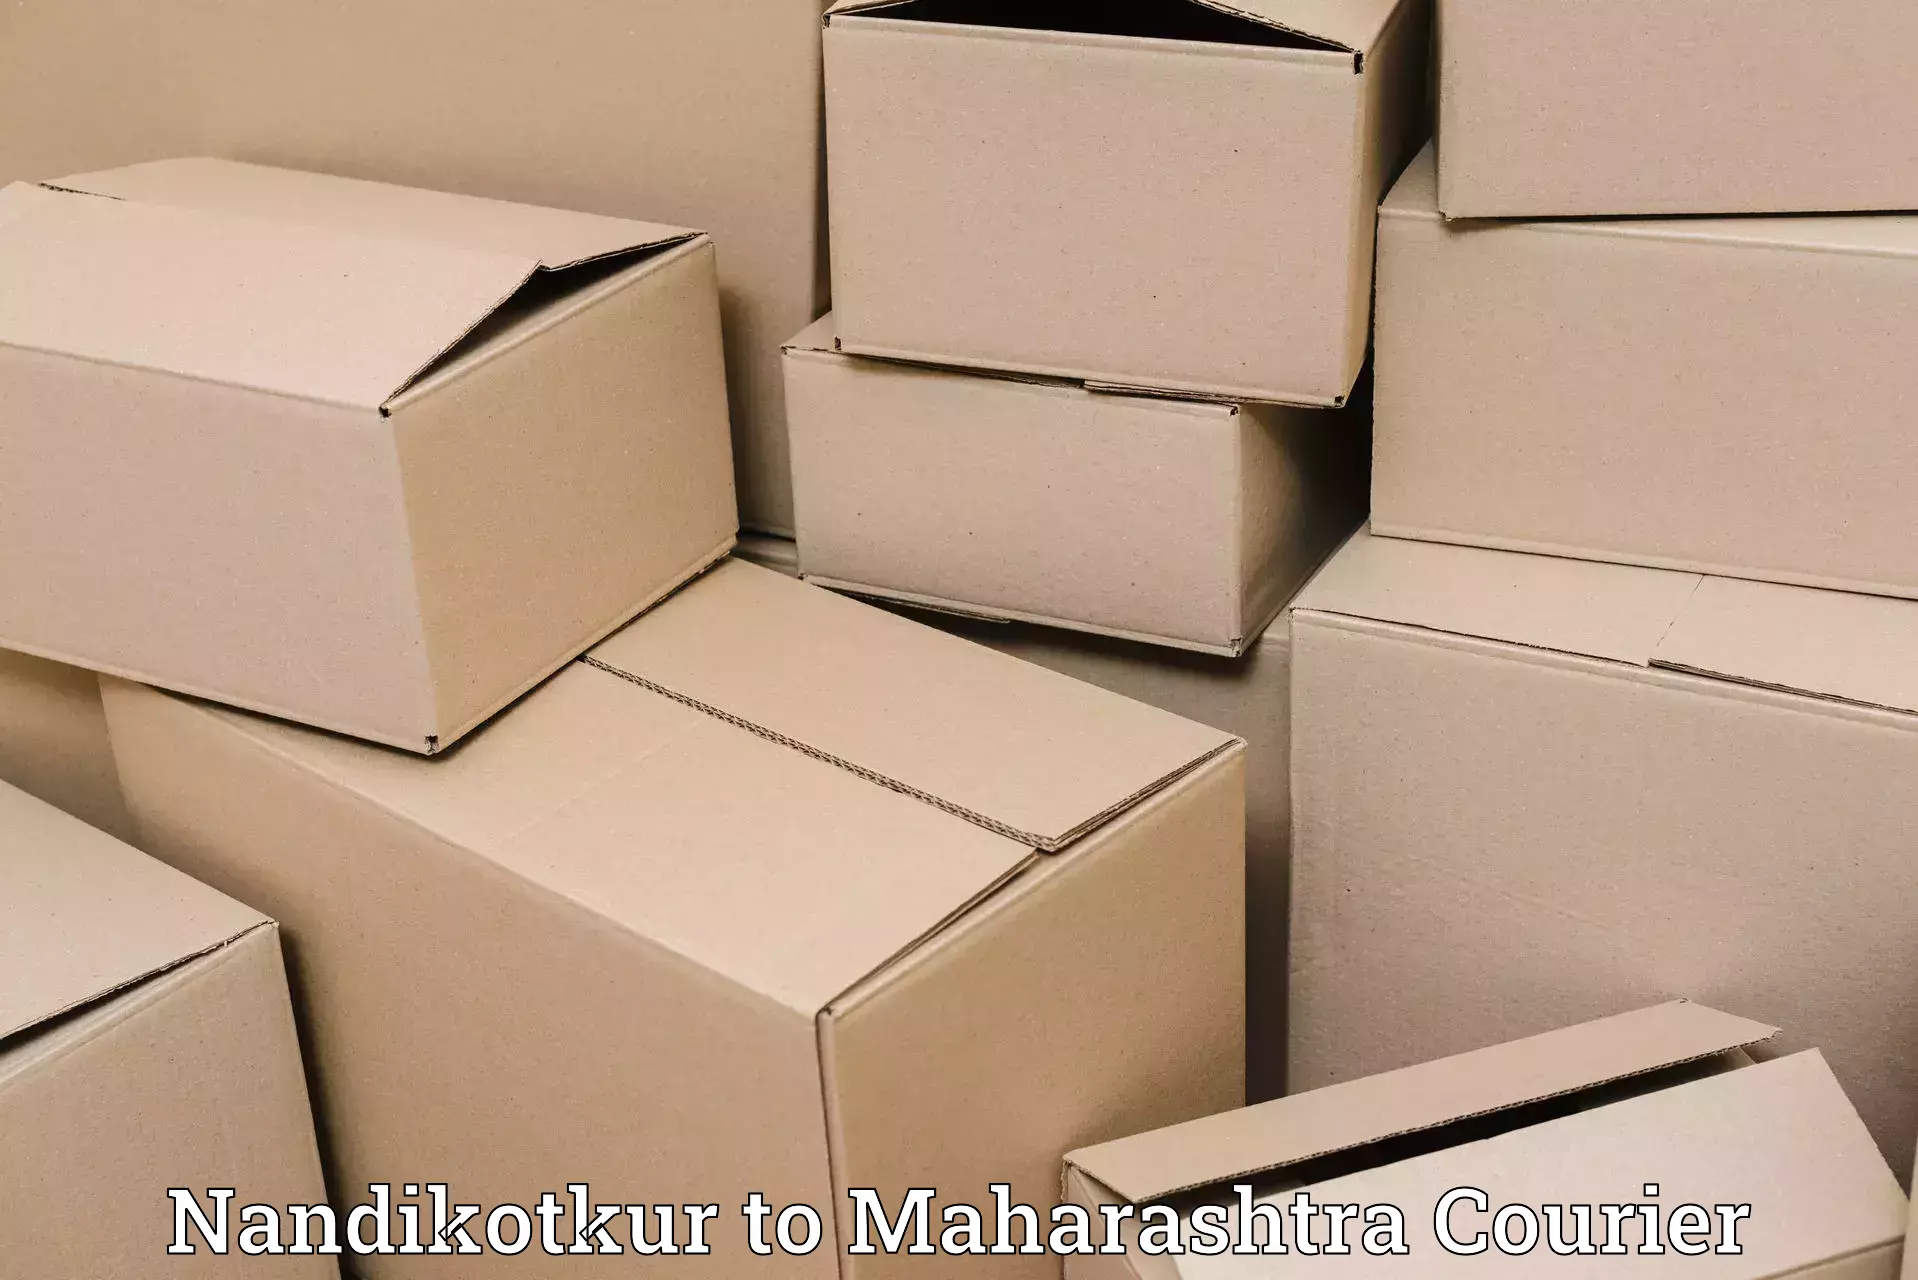 Large-scale shipping solutions Nandikotkur to IIT Mumbai